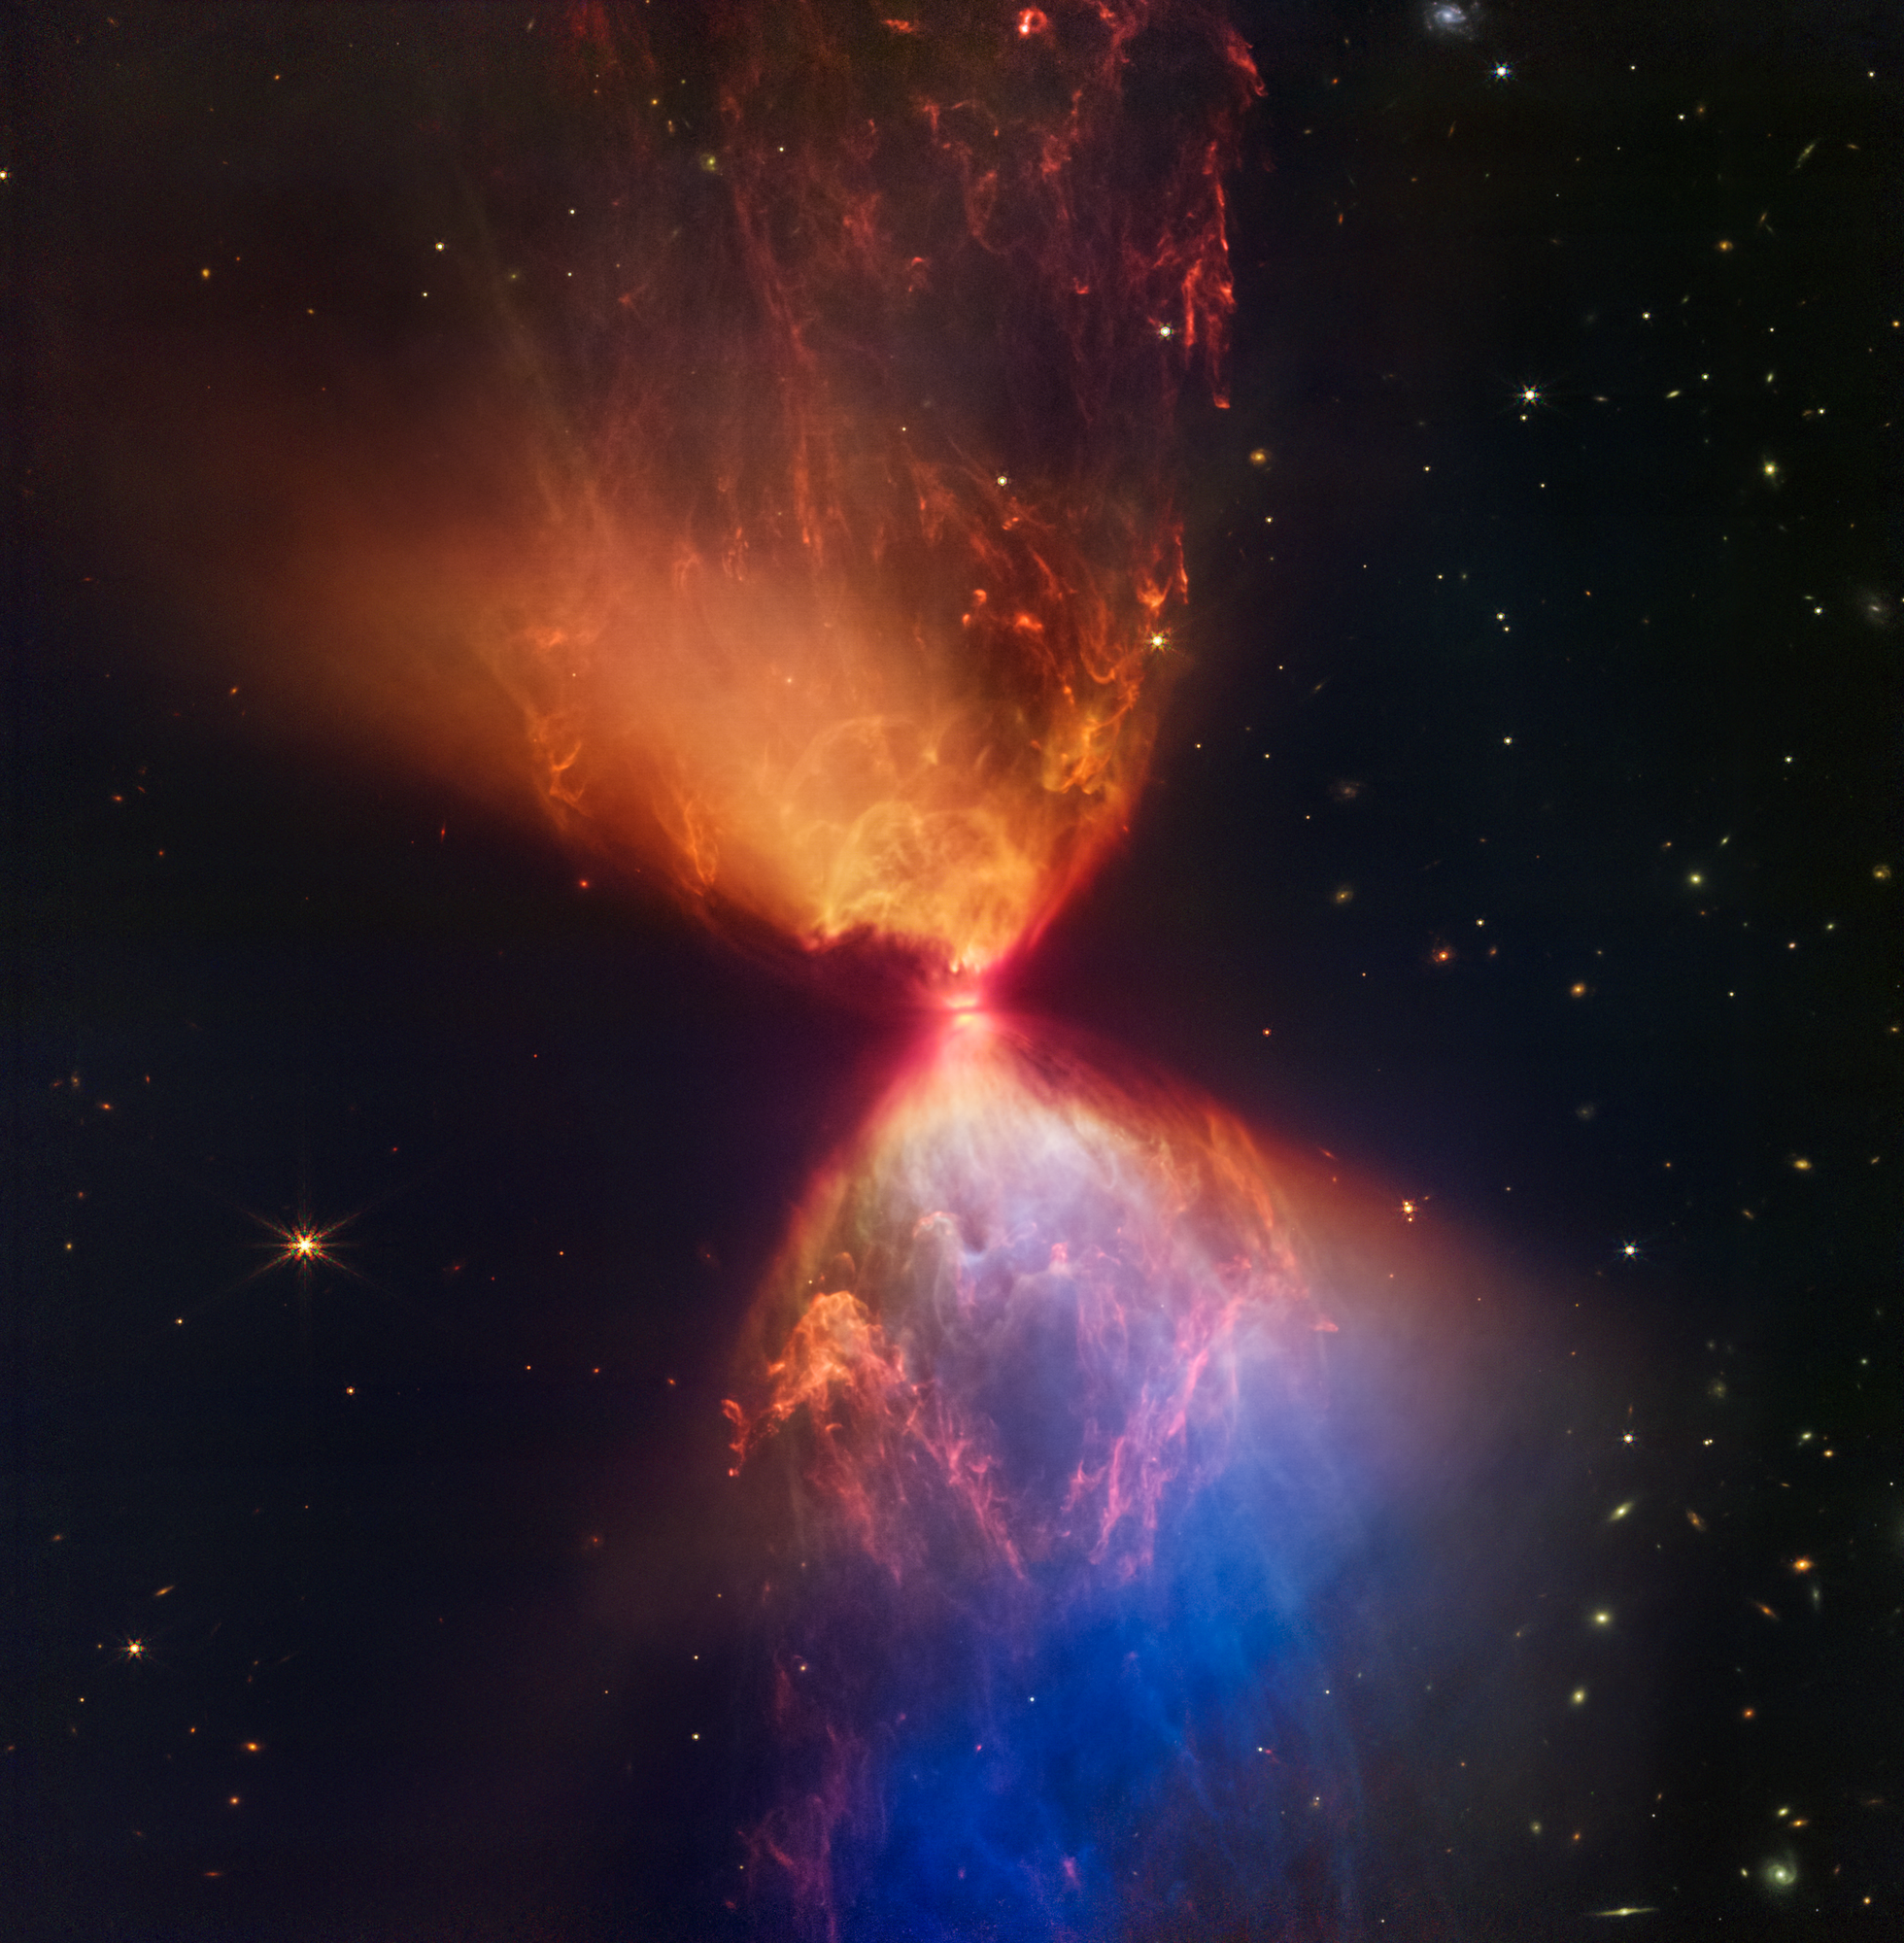 Na zdjęciu w bliskiej podczerwieni wykonanym przez Kosmiczny Teleskop Jamesa Webba (kamera NIRCam) widać protogwiazdę w ciemnej mgławicy L1527. Protogwiazda jest zanurzona w chmurze materii, którą akreuje i przez to staje się coraz cięższa. Wyrzuty materii z protogwiazdy wyczyściły przestrzeń powyżej i poniżej tego ciemnego obłoku, którego granice mają barwę pomarańczową i niebieską. W górnym, centralnym obszarze widać struktury podobne do bąbli, które powstały w wyniku sporadycznych wyrzutów materii. Teleskop Webba zarejestrował również włókna składające się z molekularnego wodoru, które zostały zjonizowane przez wyrzuconą materię w przeszłości. Brzegi obszarów z wydmuchaną materią u góry po lewej i na dole po prawej są proste, natomiast granice obszarów u góry po prawej i na dole po lewej są zakrzywione. Obszar na dole po prawej jest niebieski, ponieważ jest mniej pyłu pomiędzy tym obszarem i teleskopem Webba w porównaniu do obszaru pomarańczowego powyżej protogwiazdy. Źródło: NASA, ESA, CSA, STScI, Joseph DePasquale (STScI), Alyssa Pagan (STScI), Anton M. Koekemoer (STScI)